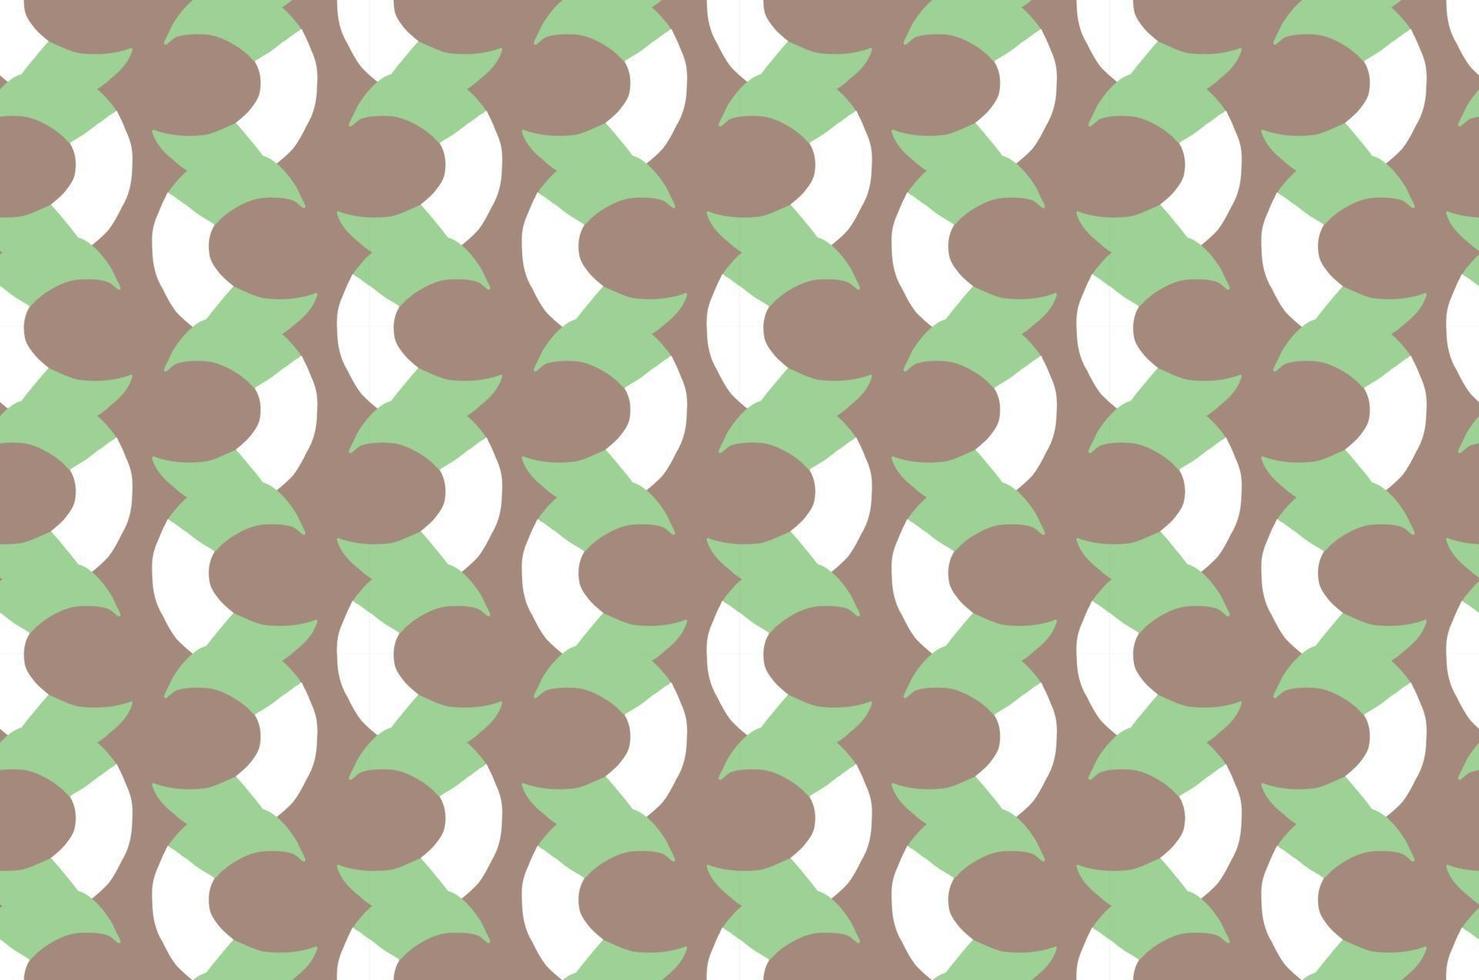 dibujado a mano, marrón, verde, blanco, colores de patrones sin fisuras vector